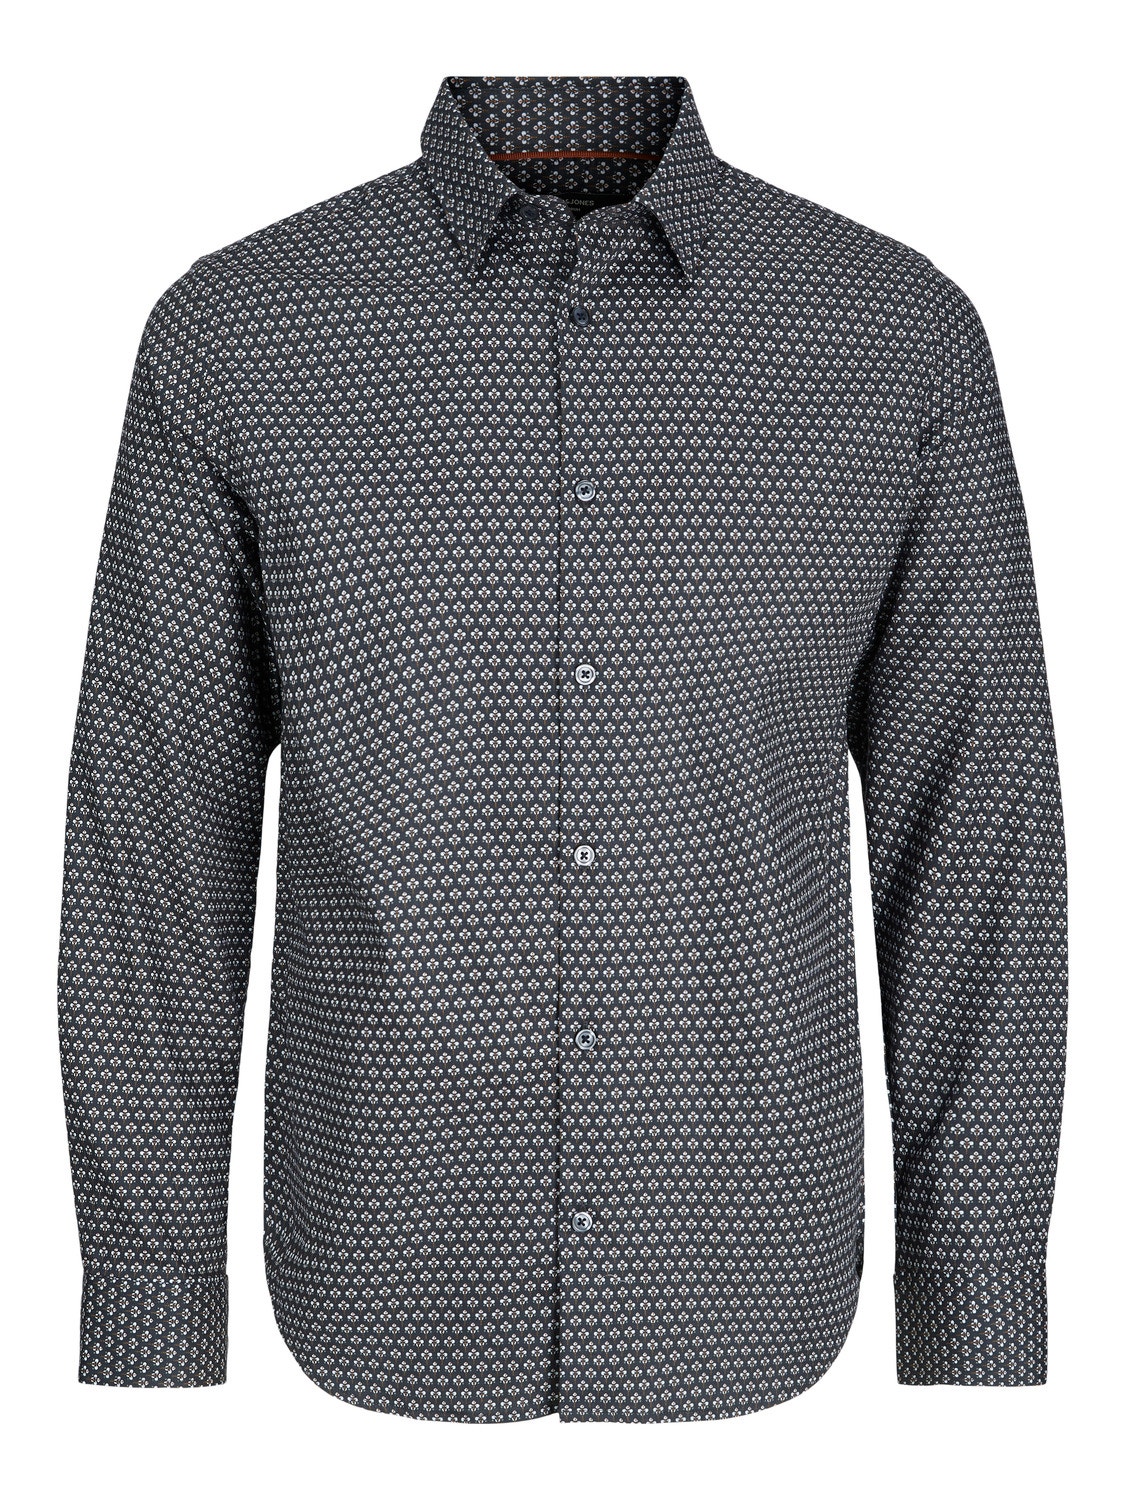 Jack & Jones Plus Size Loose Fit Koszula wizytowa -Navy Blazer - 12252120